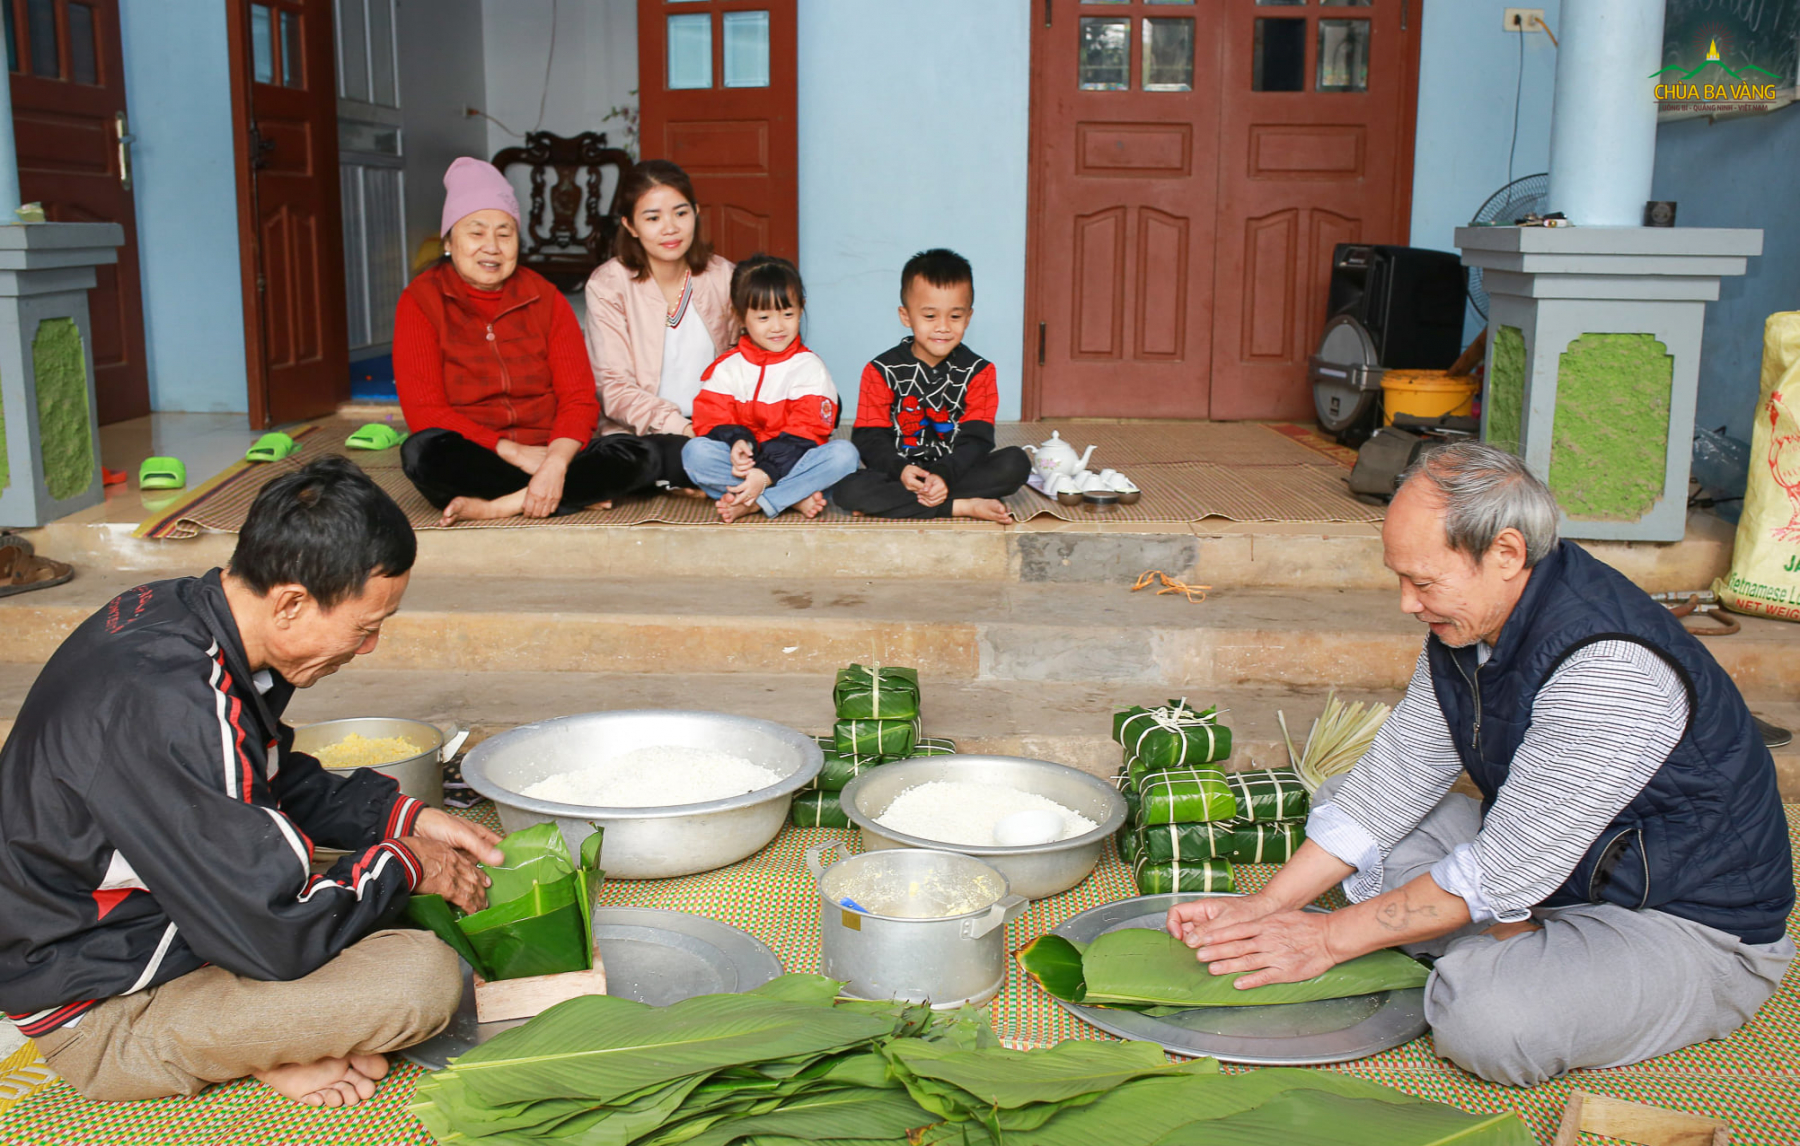 Tục gói chưng ngày Tết đã trở thành nét văn hóa truyền thống của dân tộc Việt Nam, được lưu truyền qua nhiều thế hệ